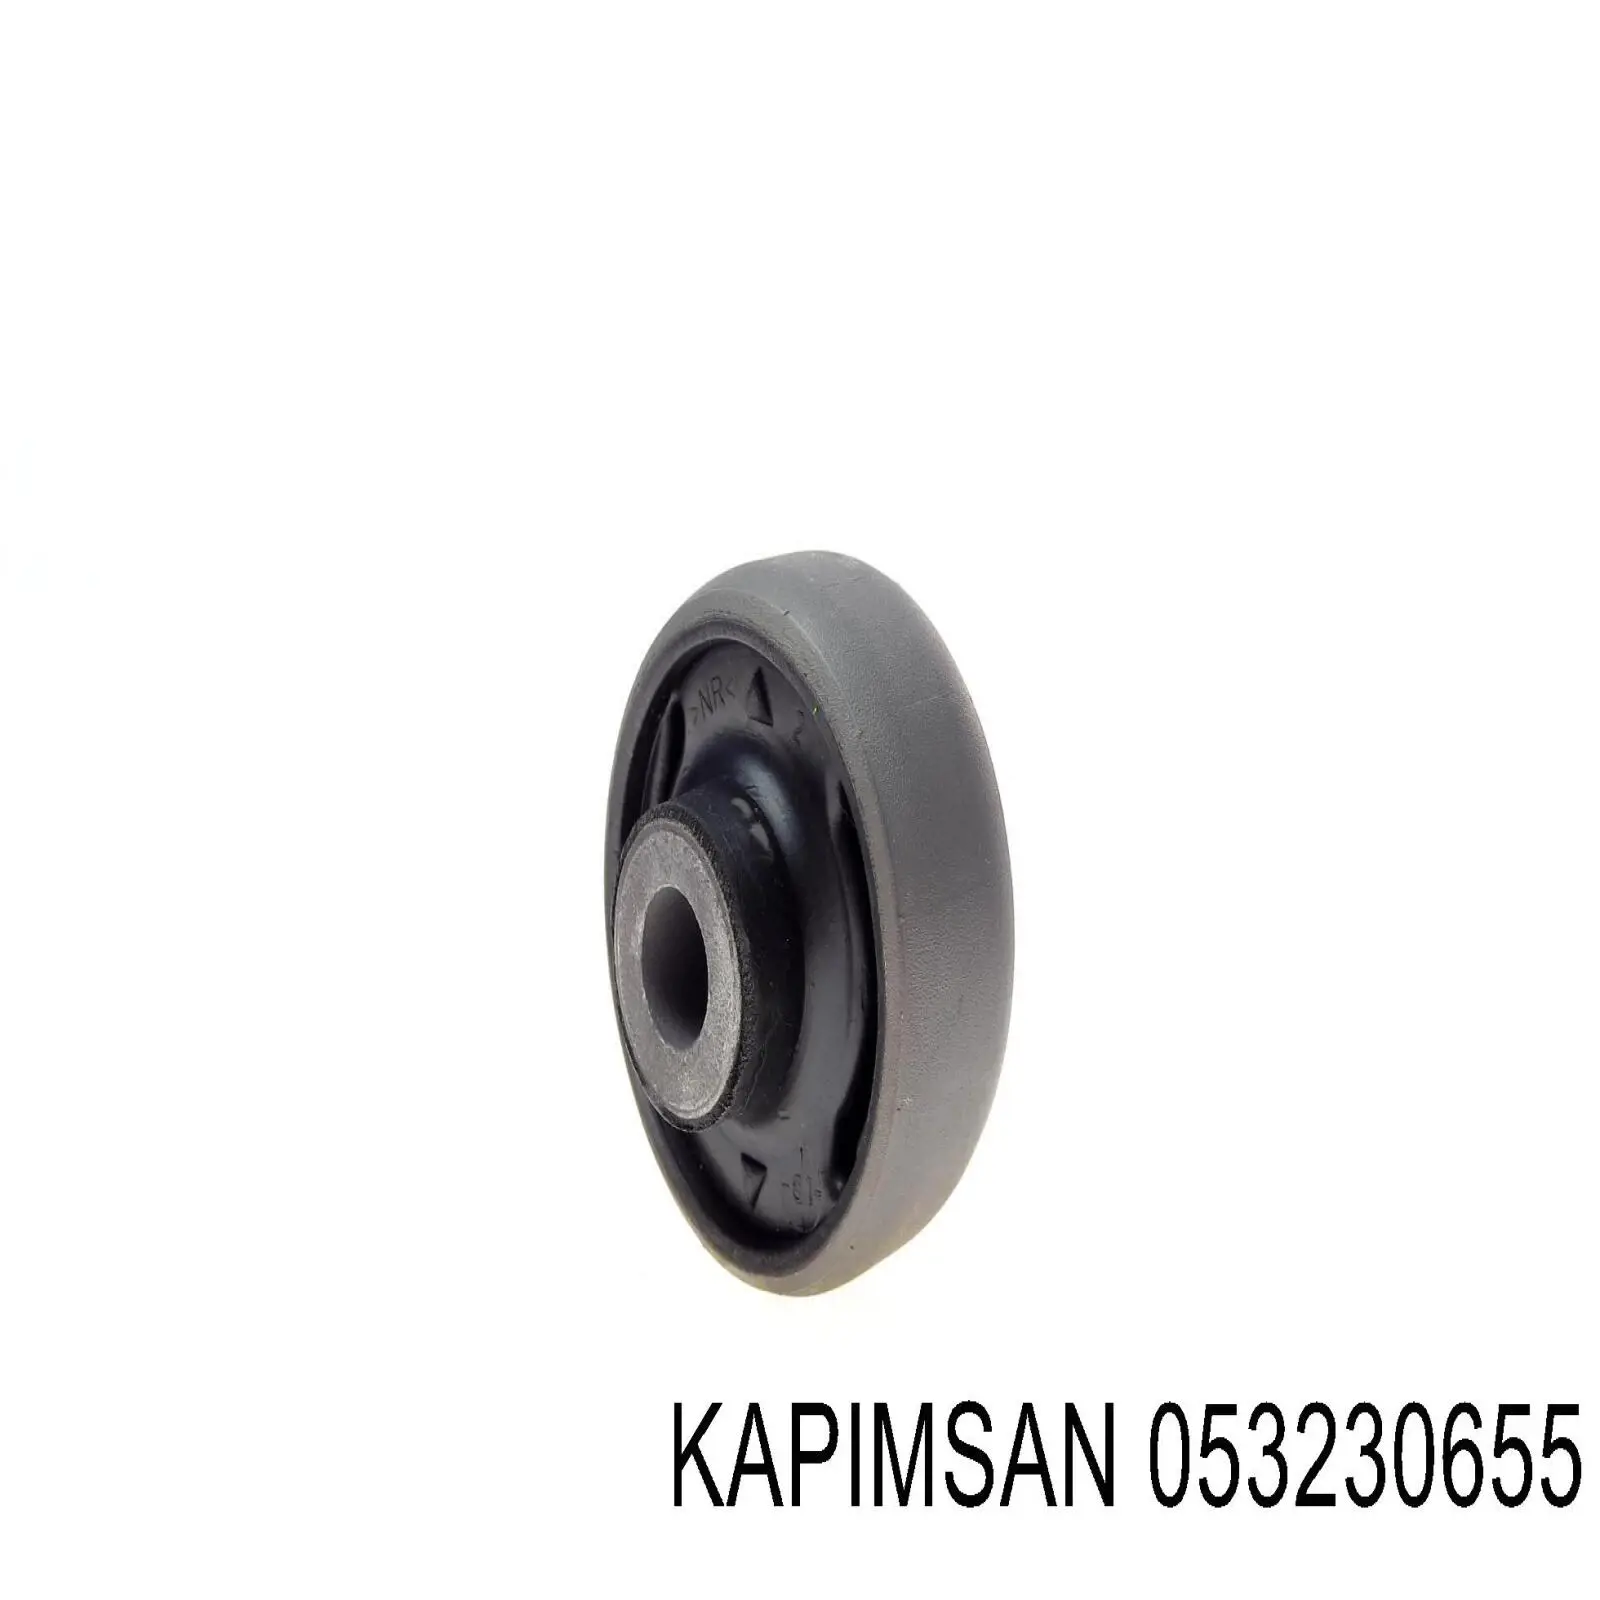 0-53-23-0655 Kapimsan silentblock de suspensión delantero inferior